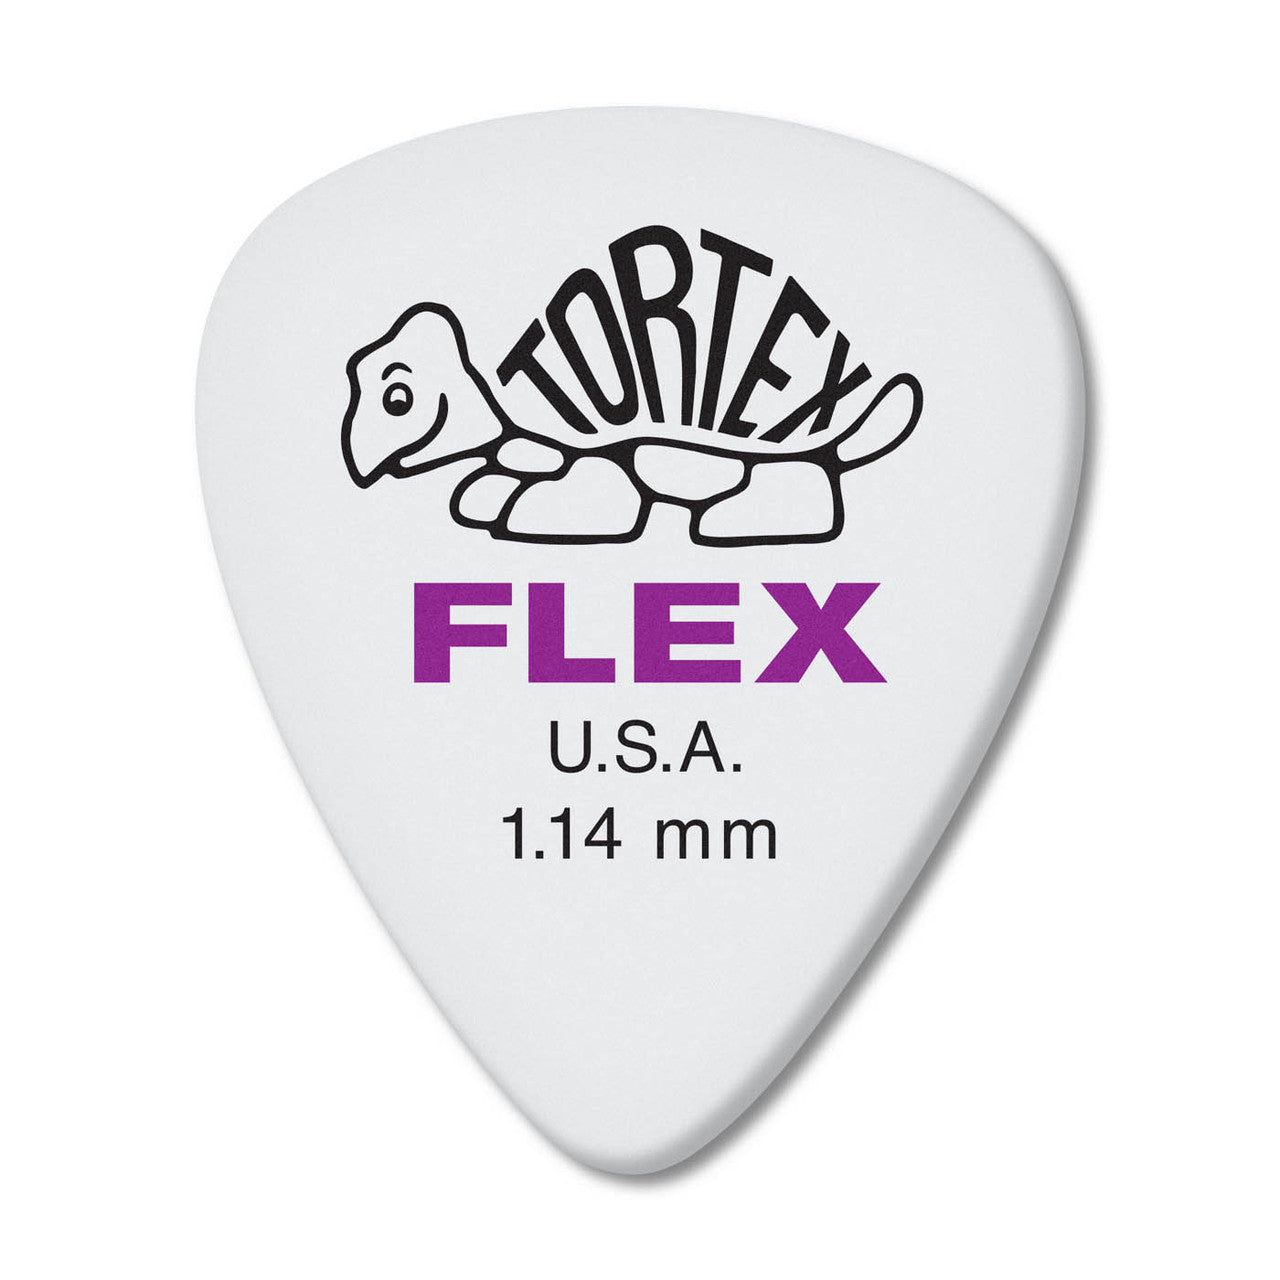 Dunlop Tortex Flex Standard Players 12xPack | Select Gauge